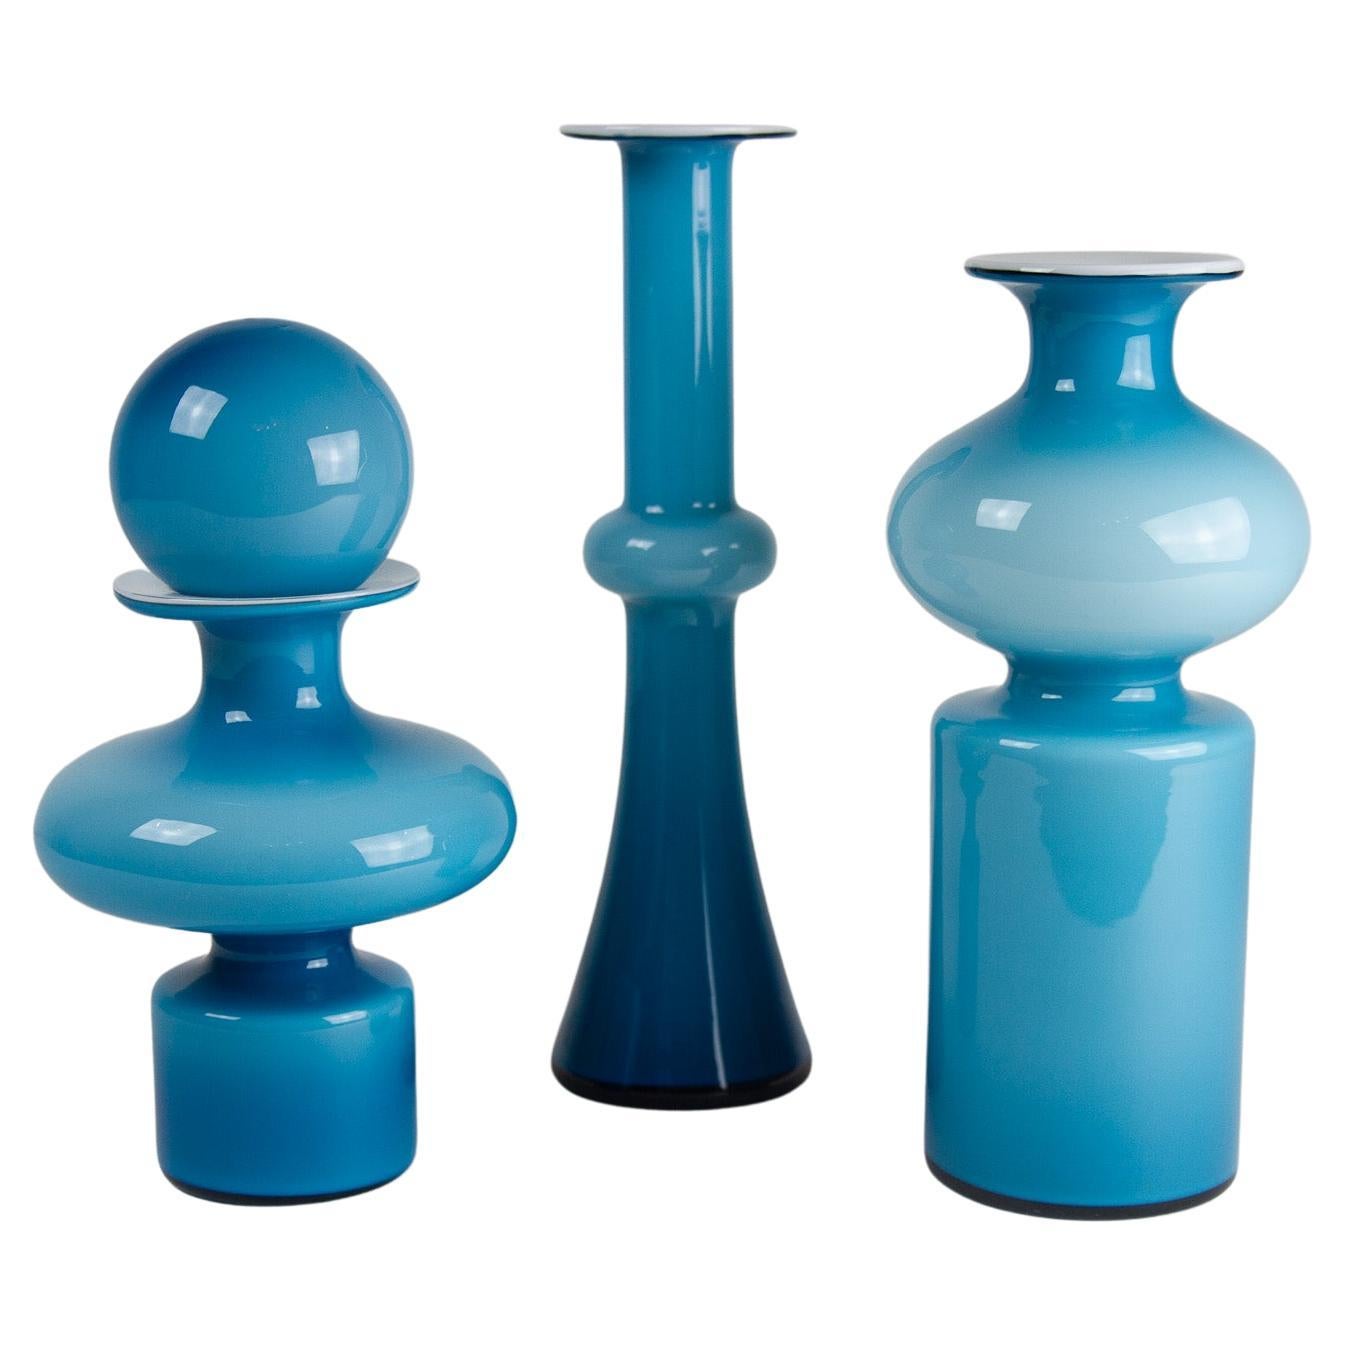 Dänische Carnaby-Vasen von Per Lütken für Holmegaard 1960er Jahre, 3er-Set